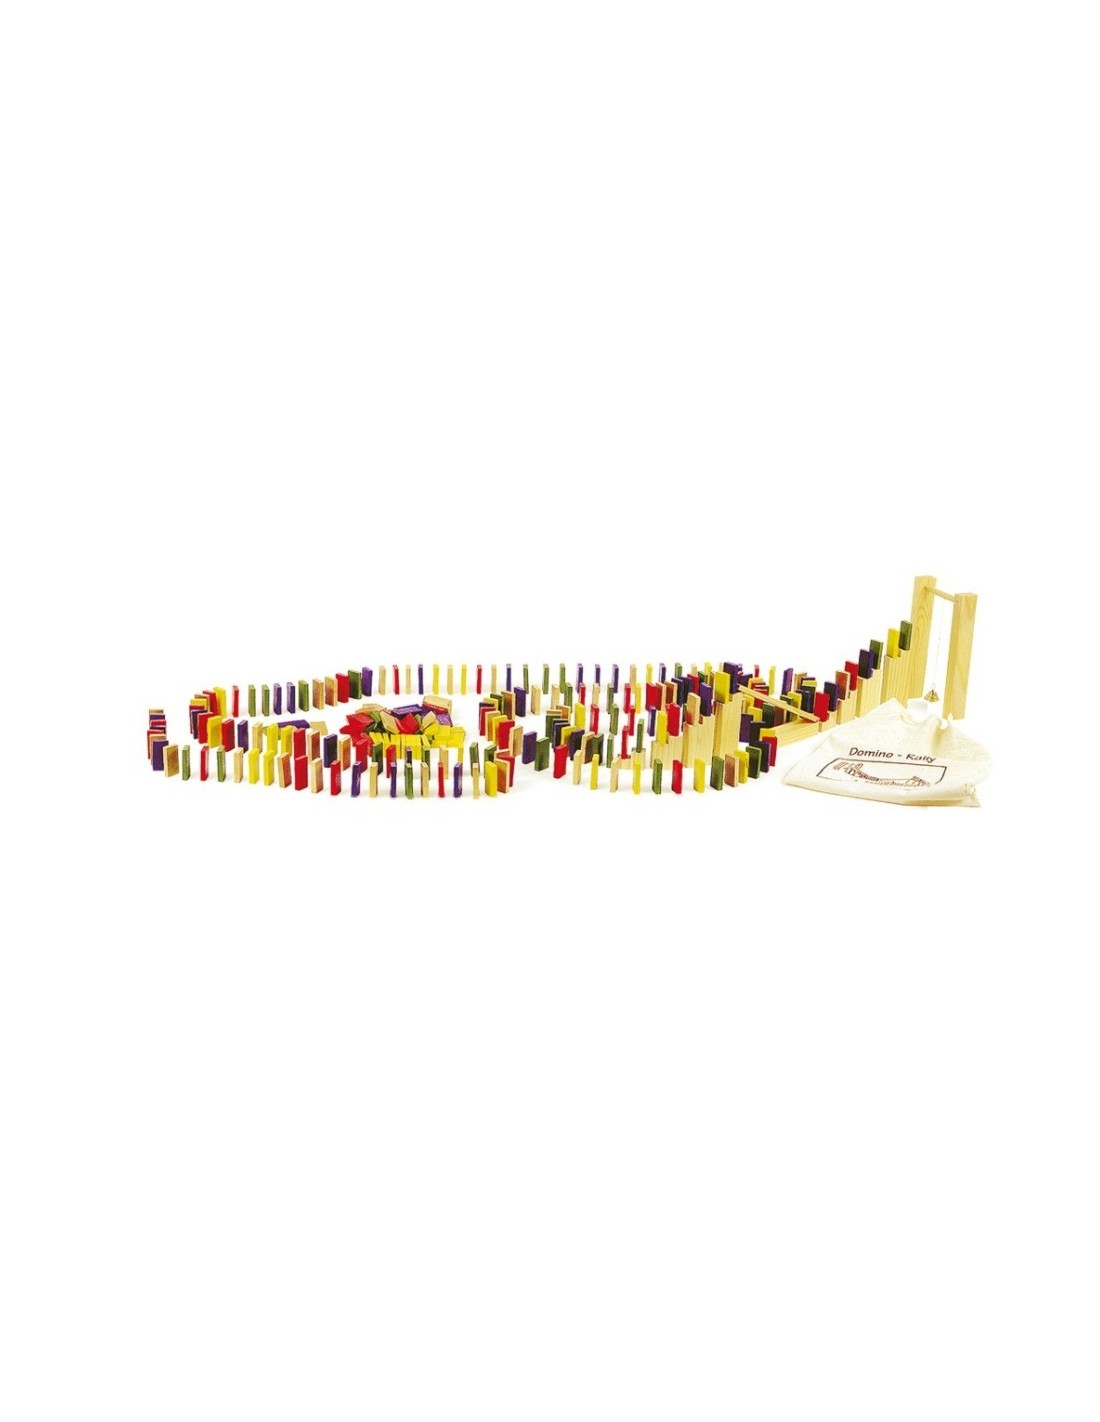 Dòmino ral·li de fusta amb colorit joc de construcció de circuit de domino joc dhabilitat